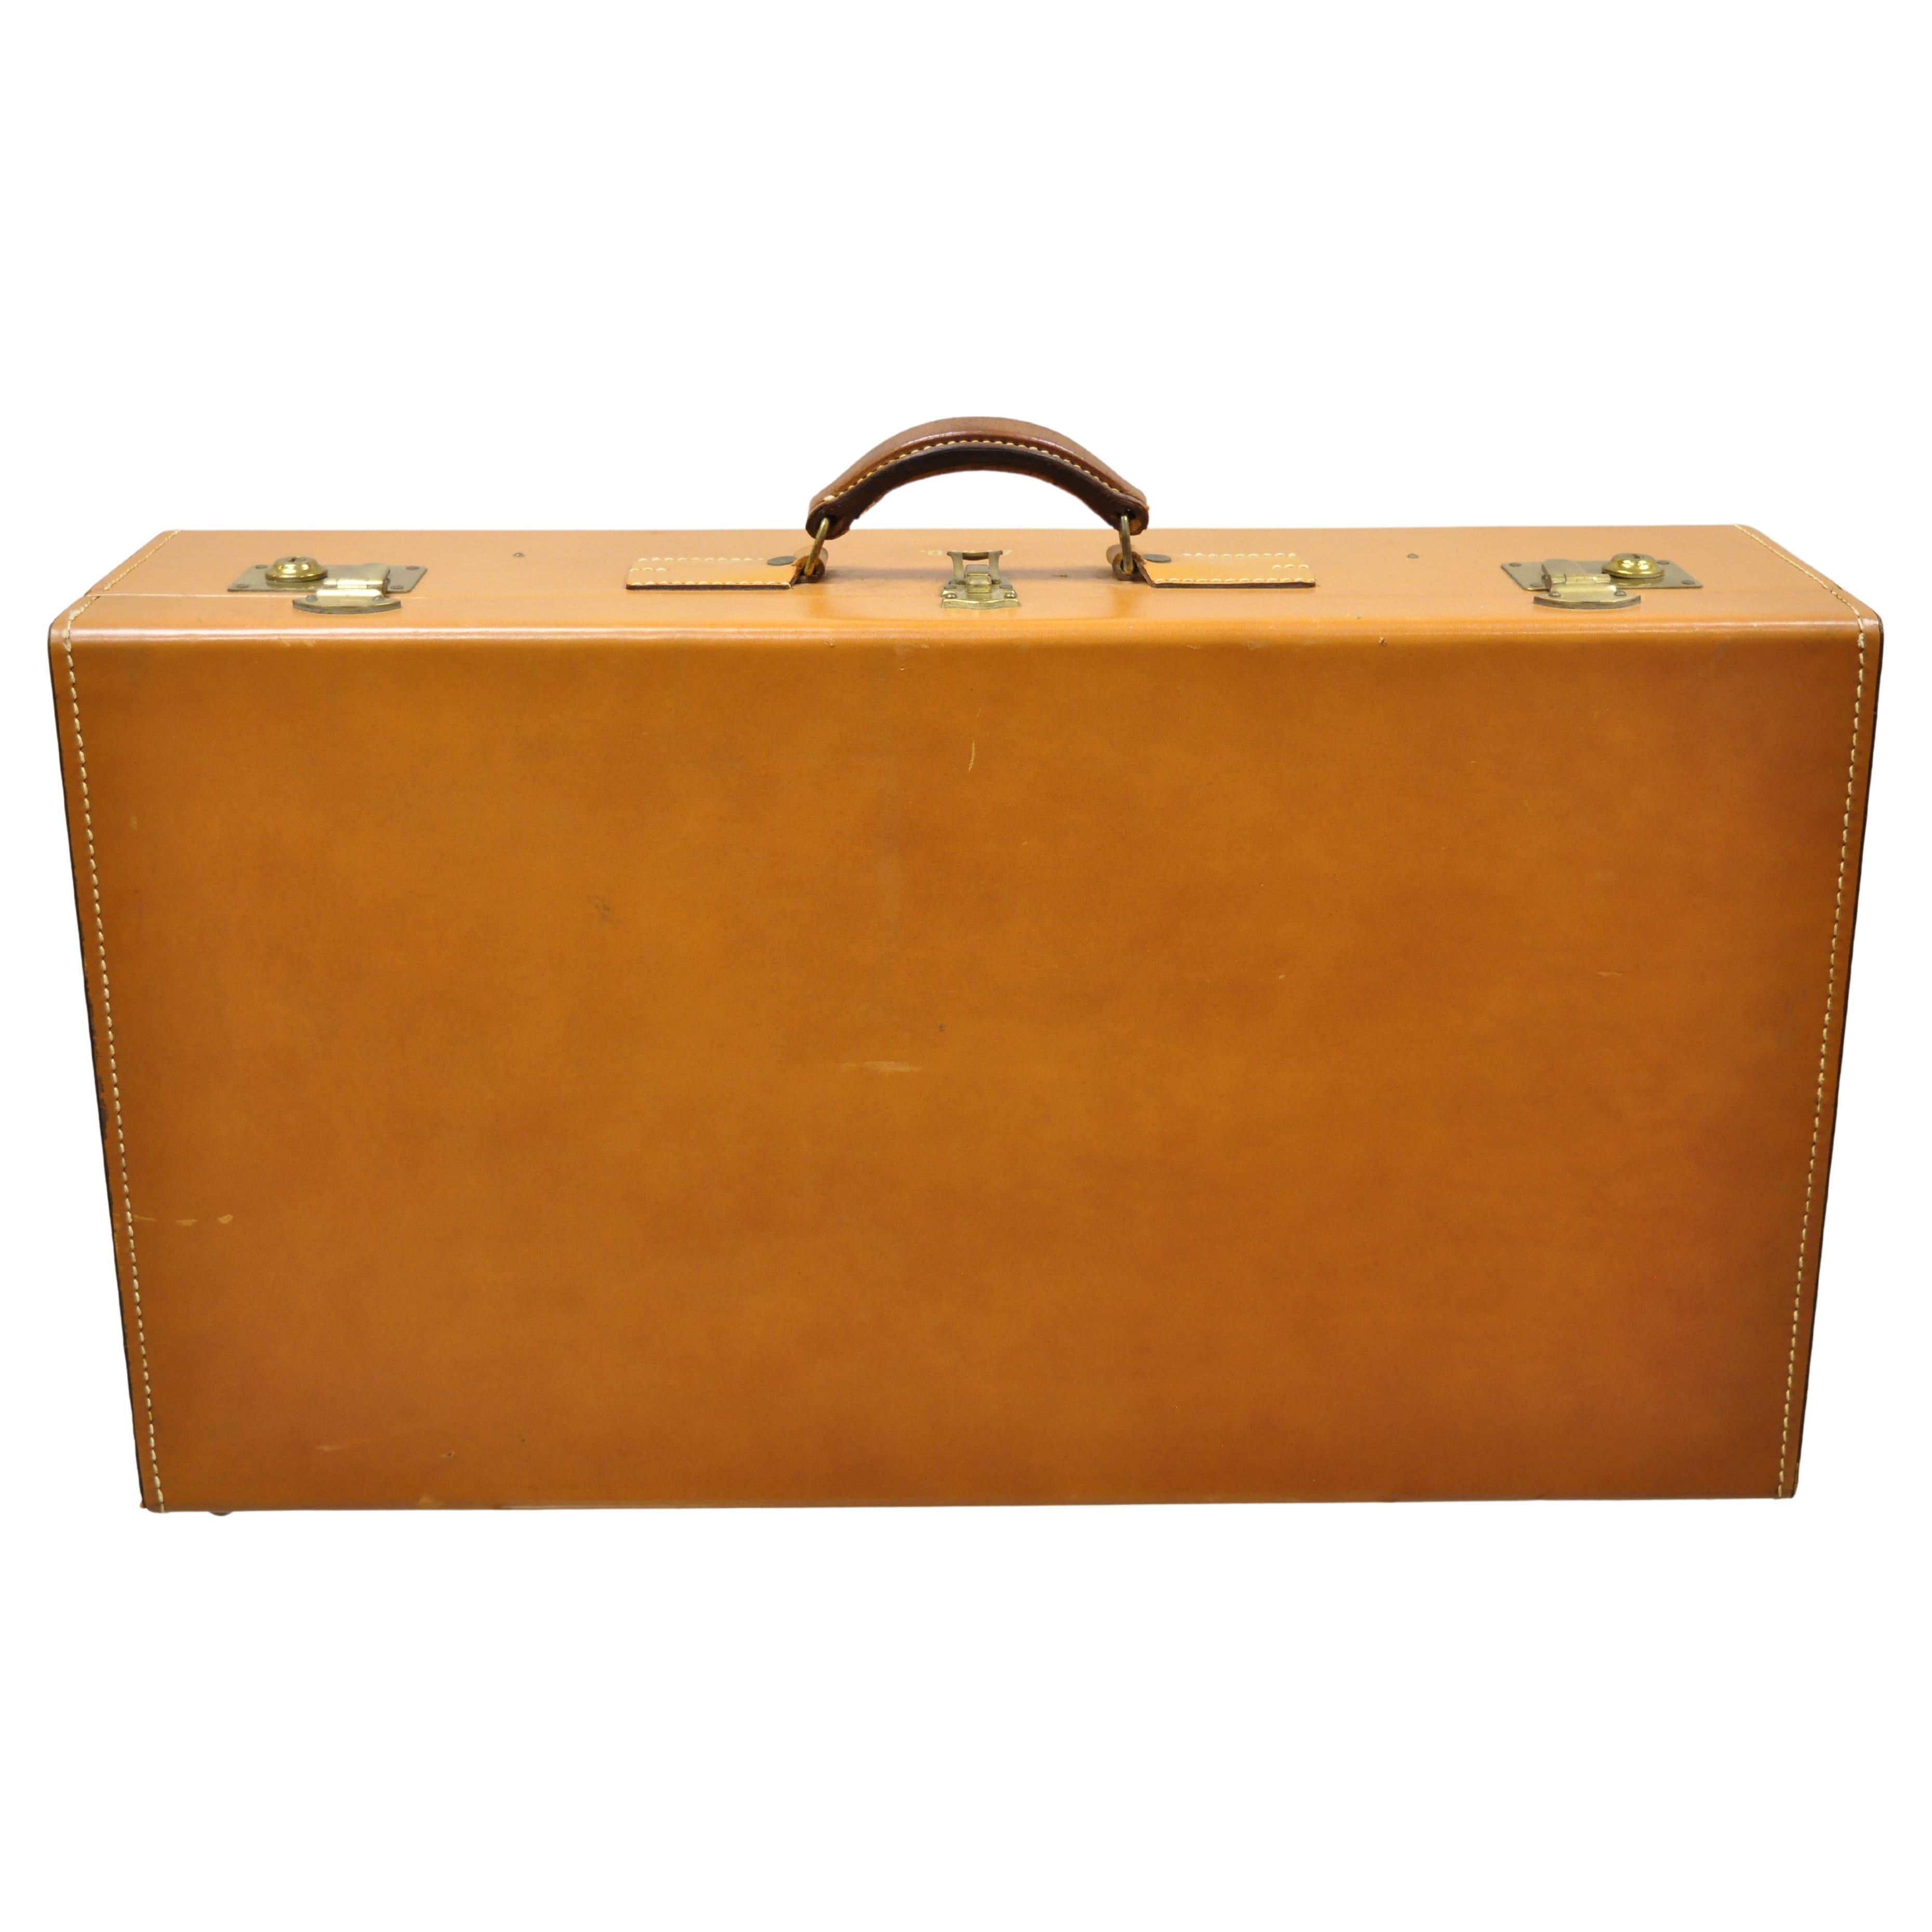 Vintage Brown Tan Top Grain Cowhide Leather Large Hard Suitcase Luggage